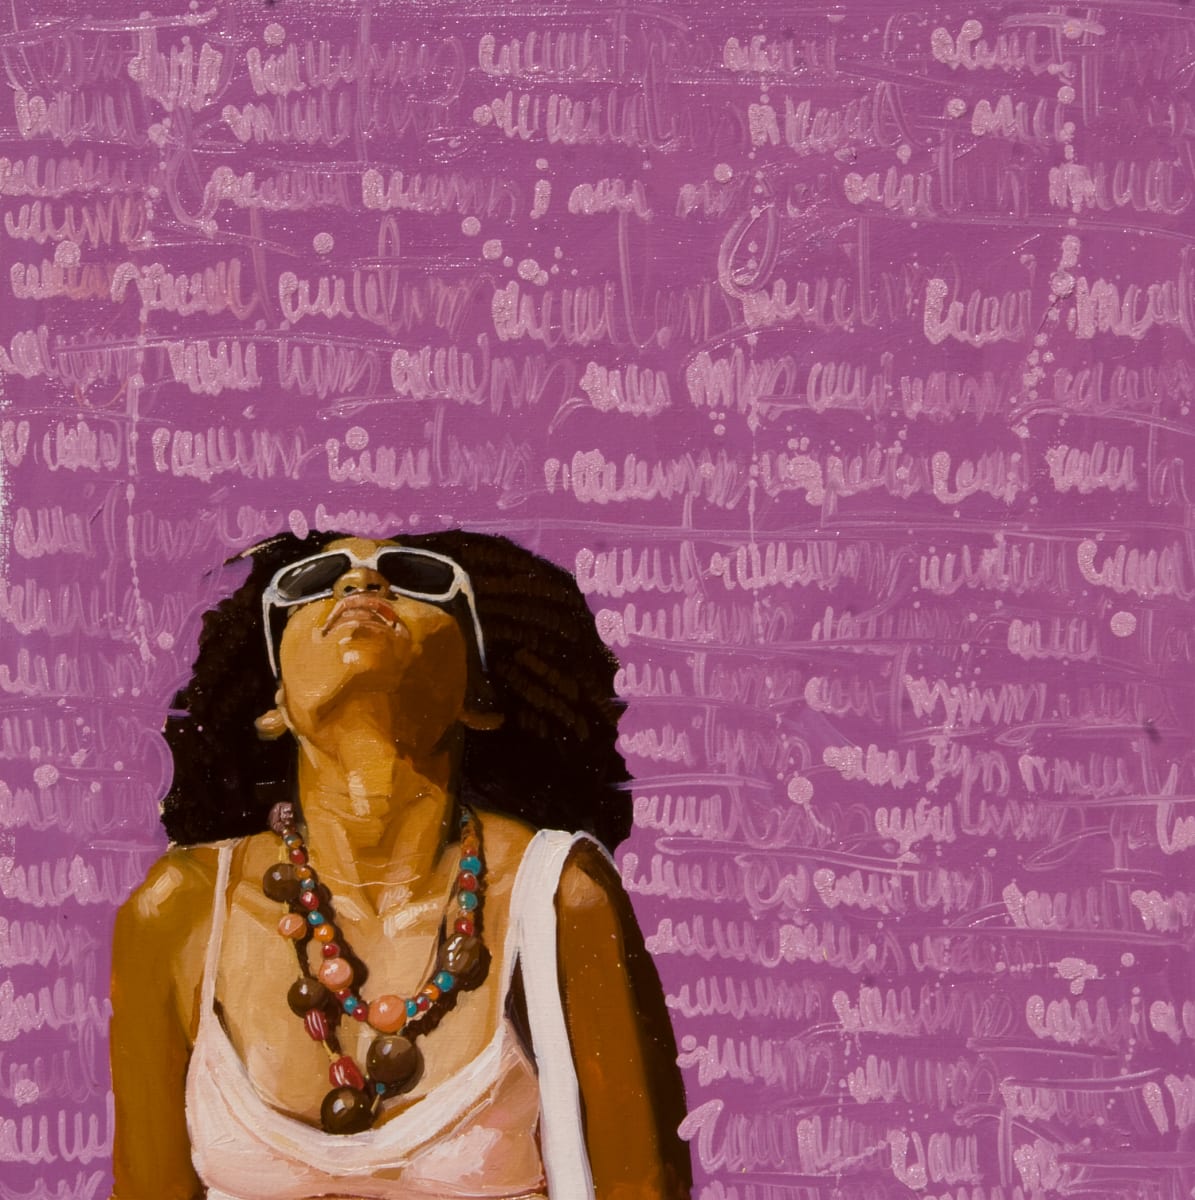 Serie "Escrituras pintadas - violetica" by Yunior Hurtado Torres  Image: "Escrituras pintadas - violetica"